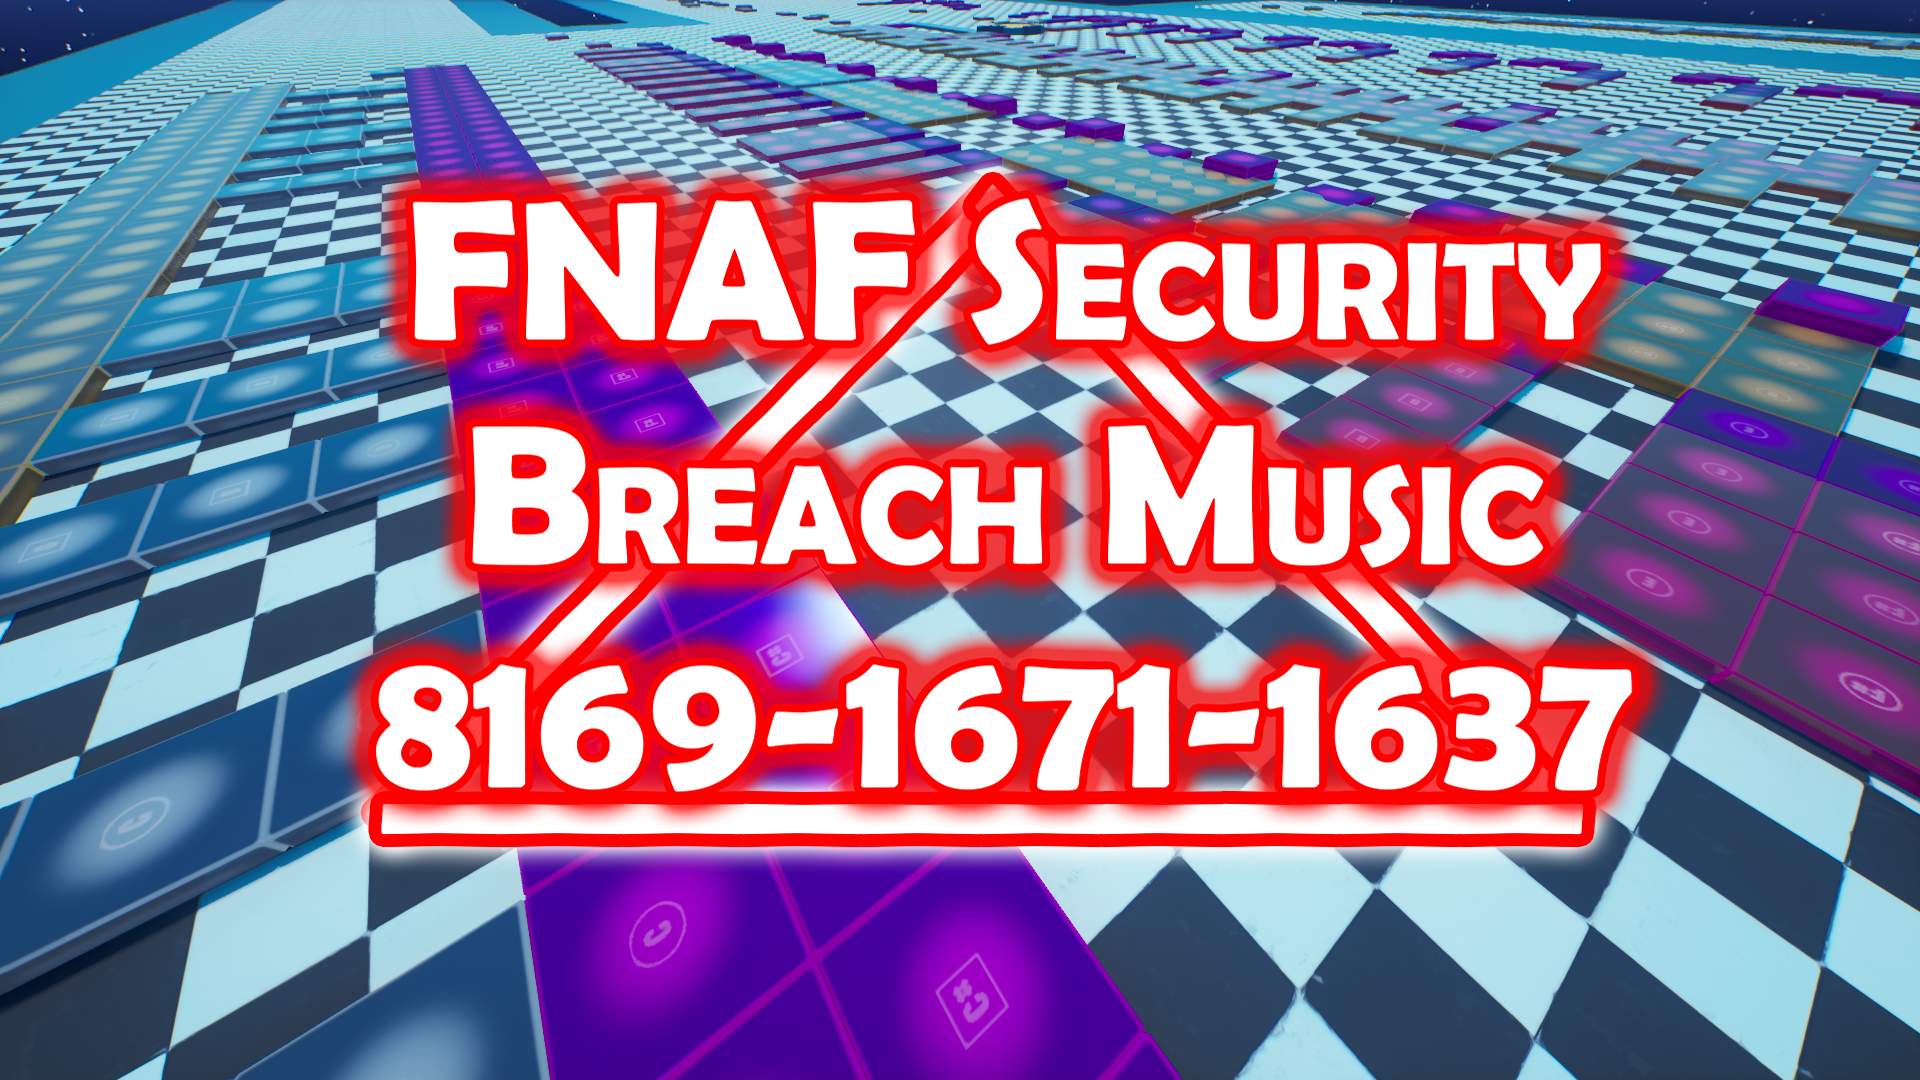 FNAF SECURITY BREACH MUSIC